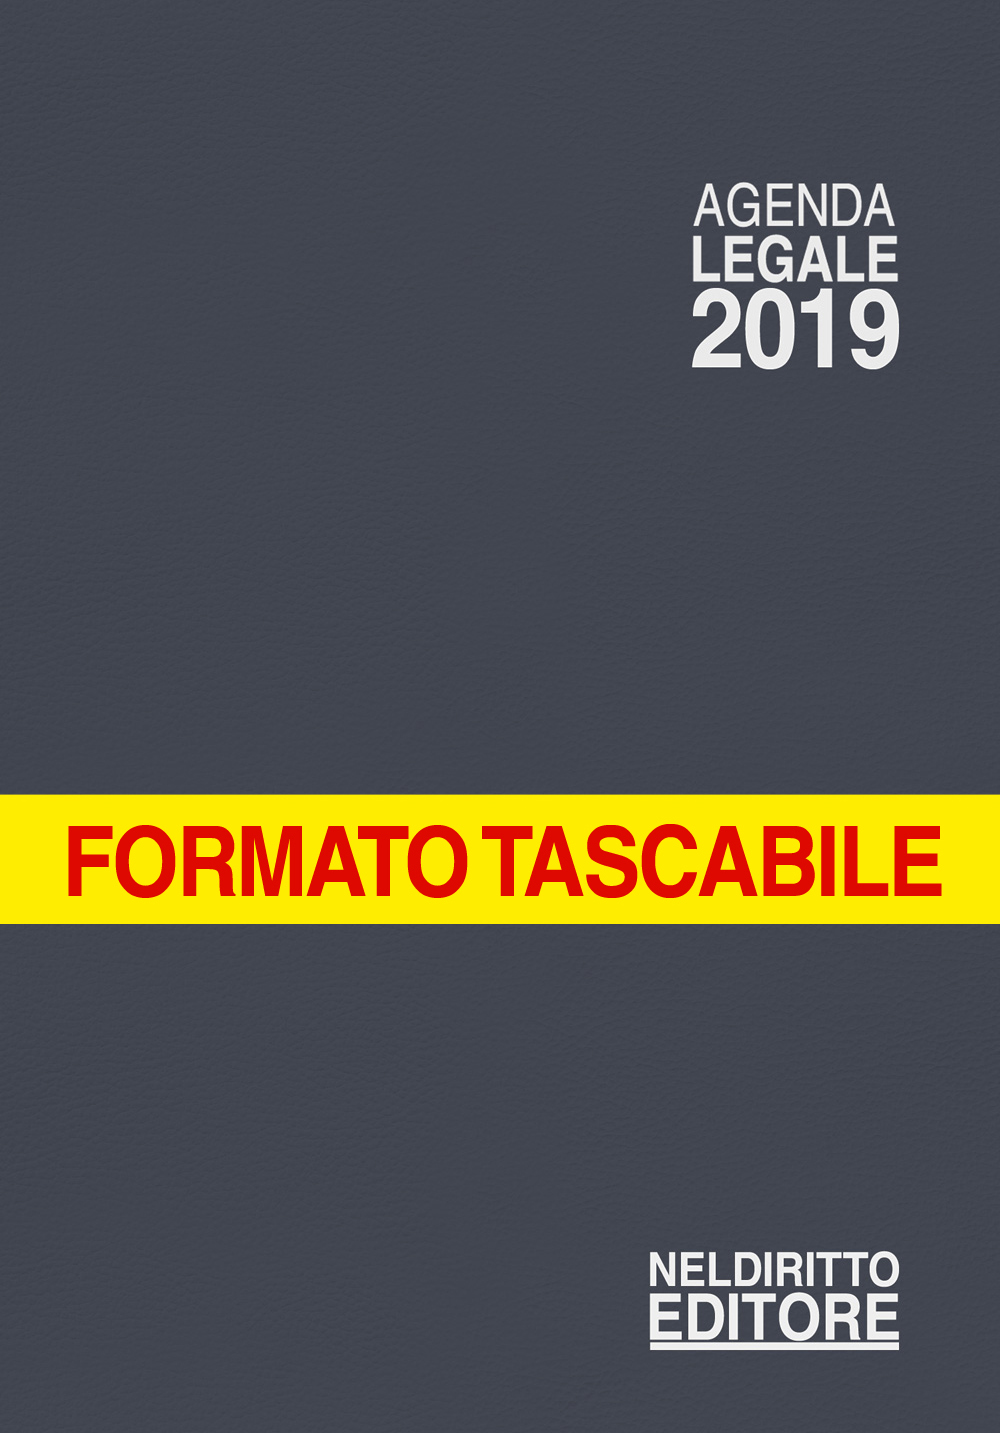 AGENDA LEGALE 2019 - Formato tascabile - colore GRIGIO